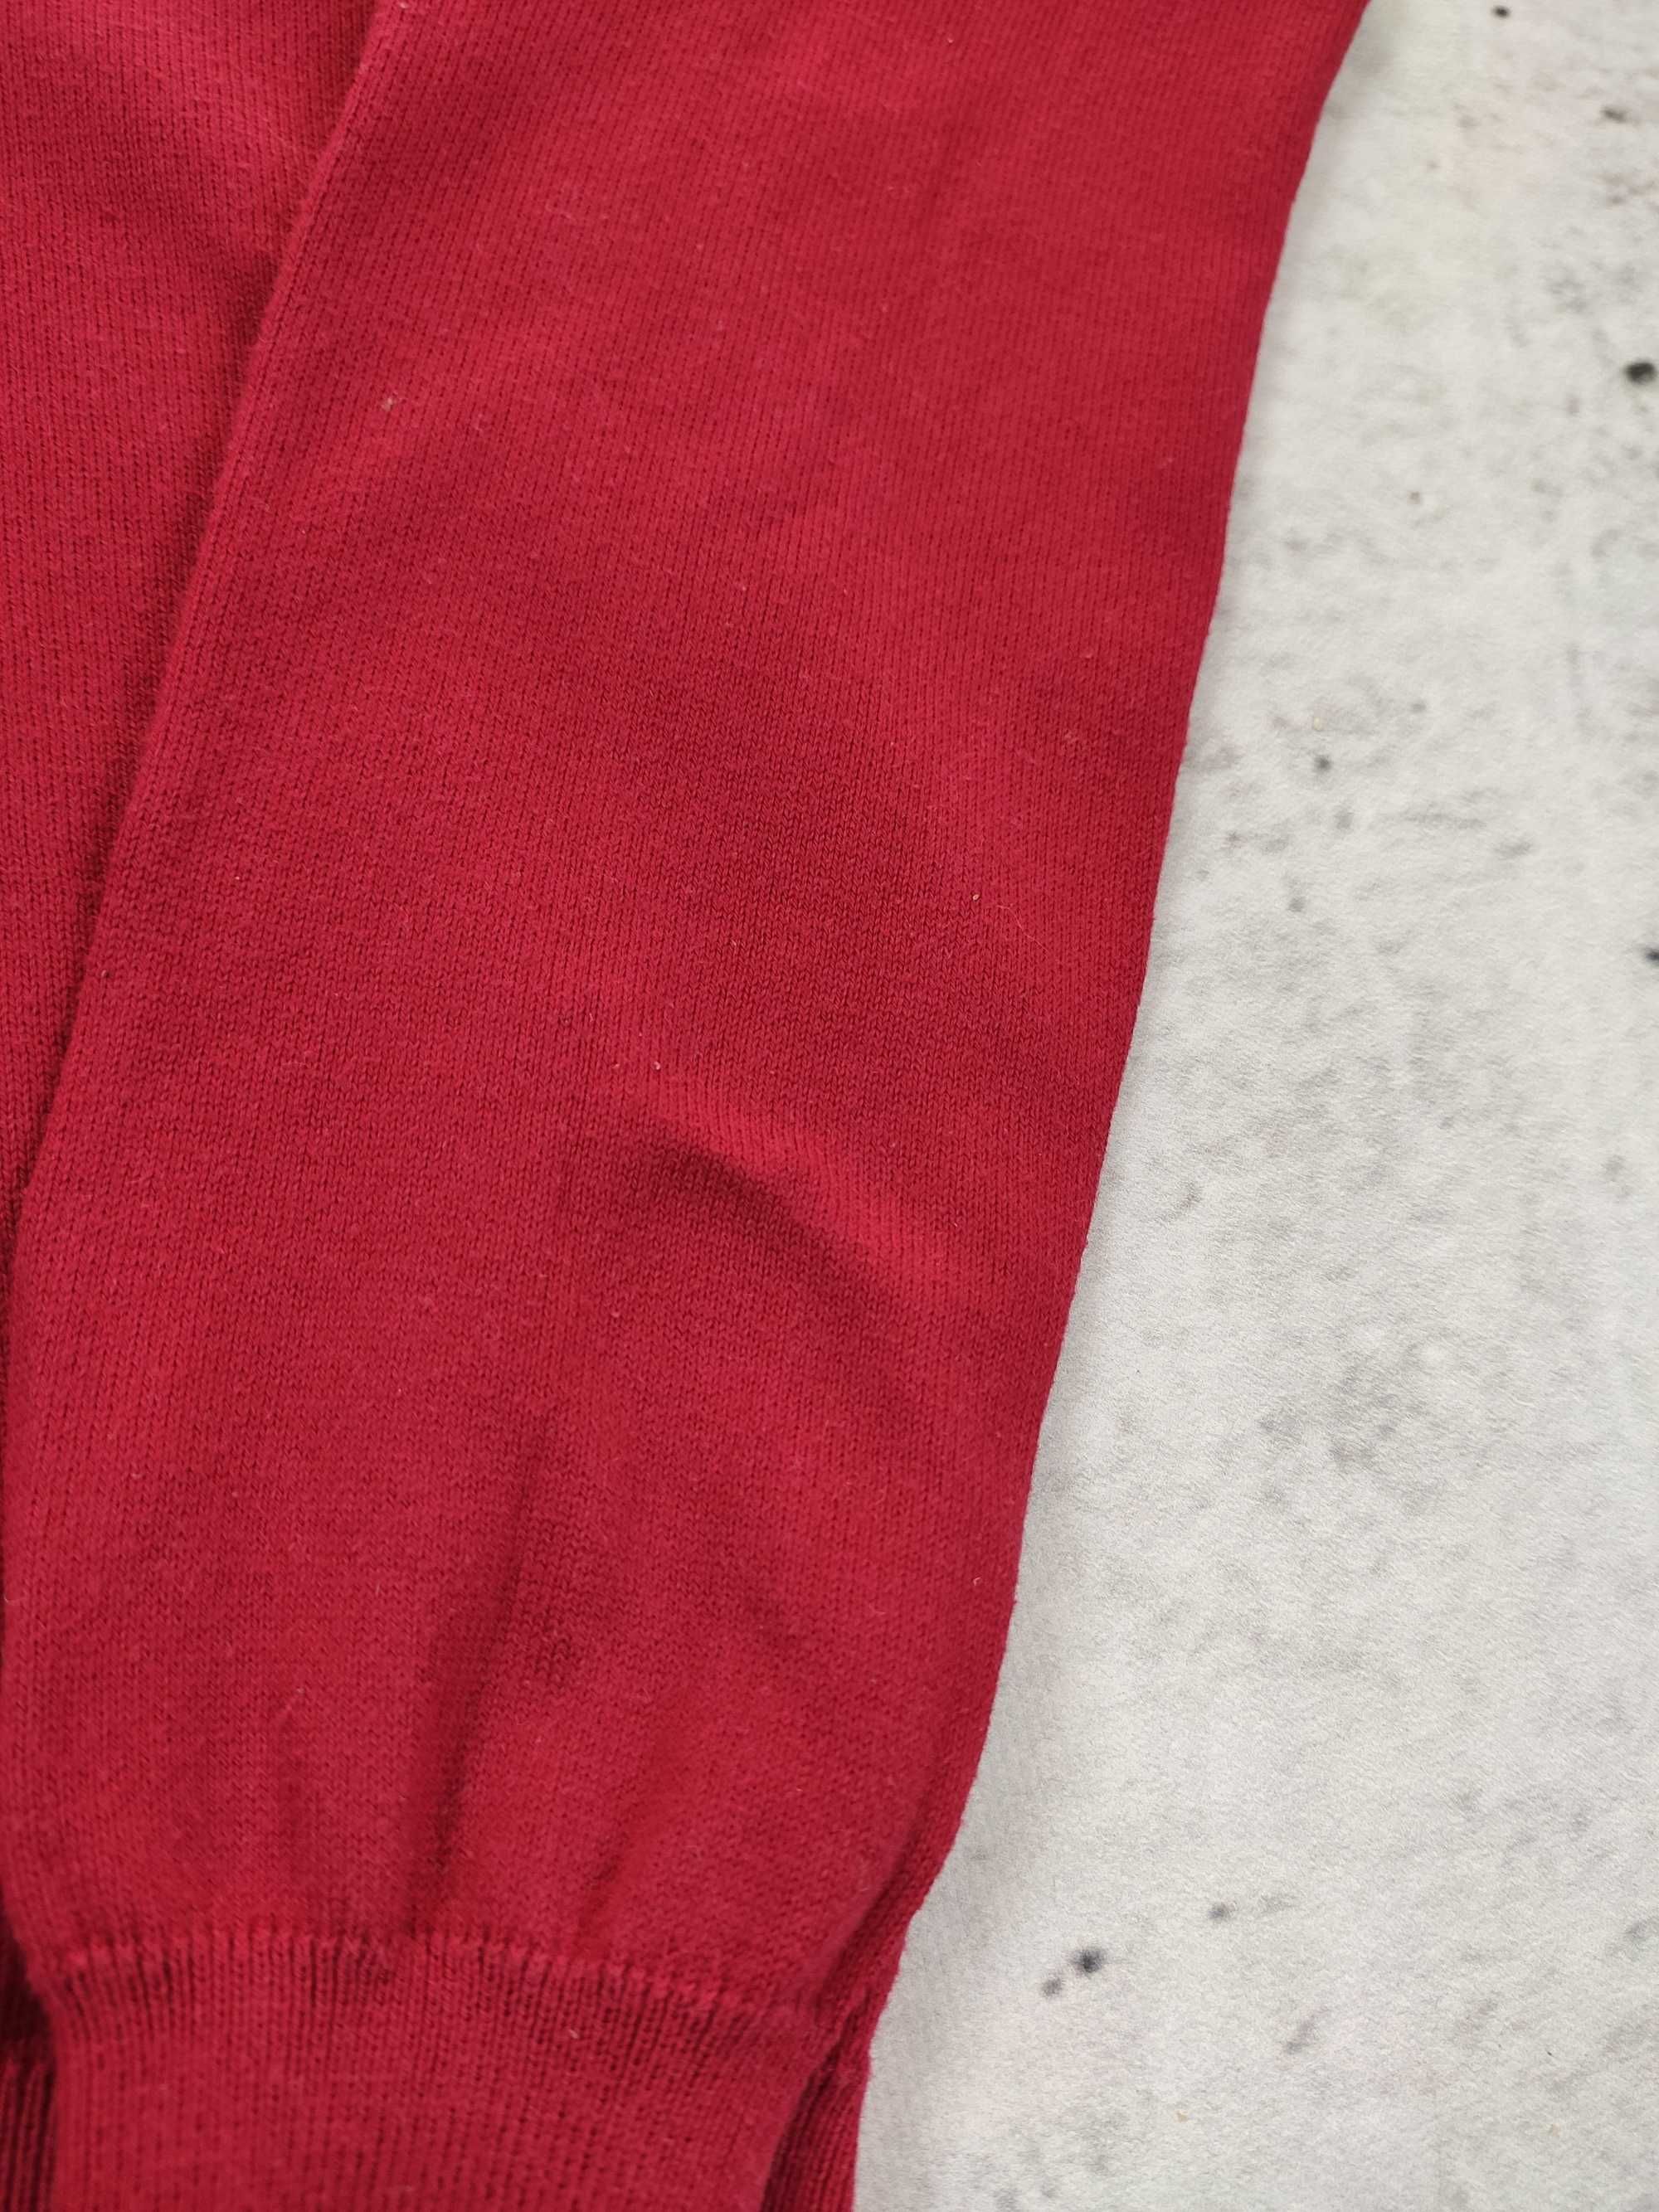 Sweter Ralph Lauren damski czerwony serek elegancki r. M